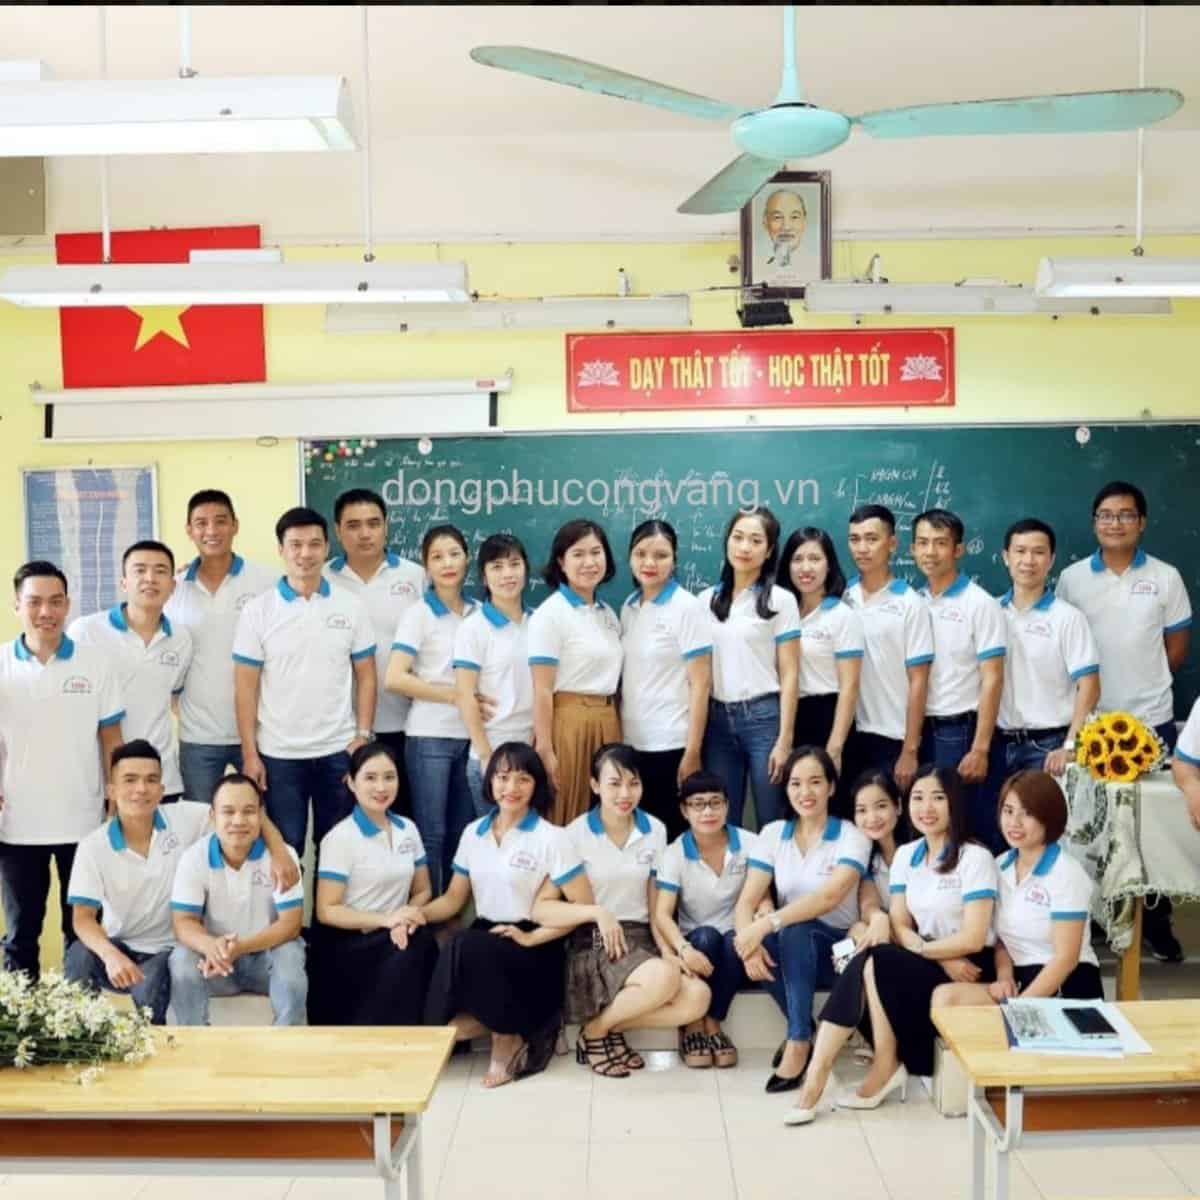 Đồng phục hợp lớp tại Nghệ An